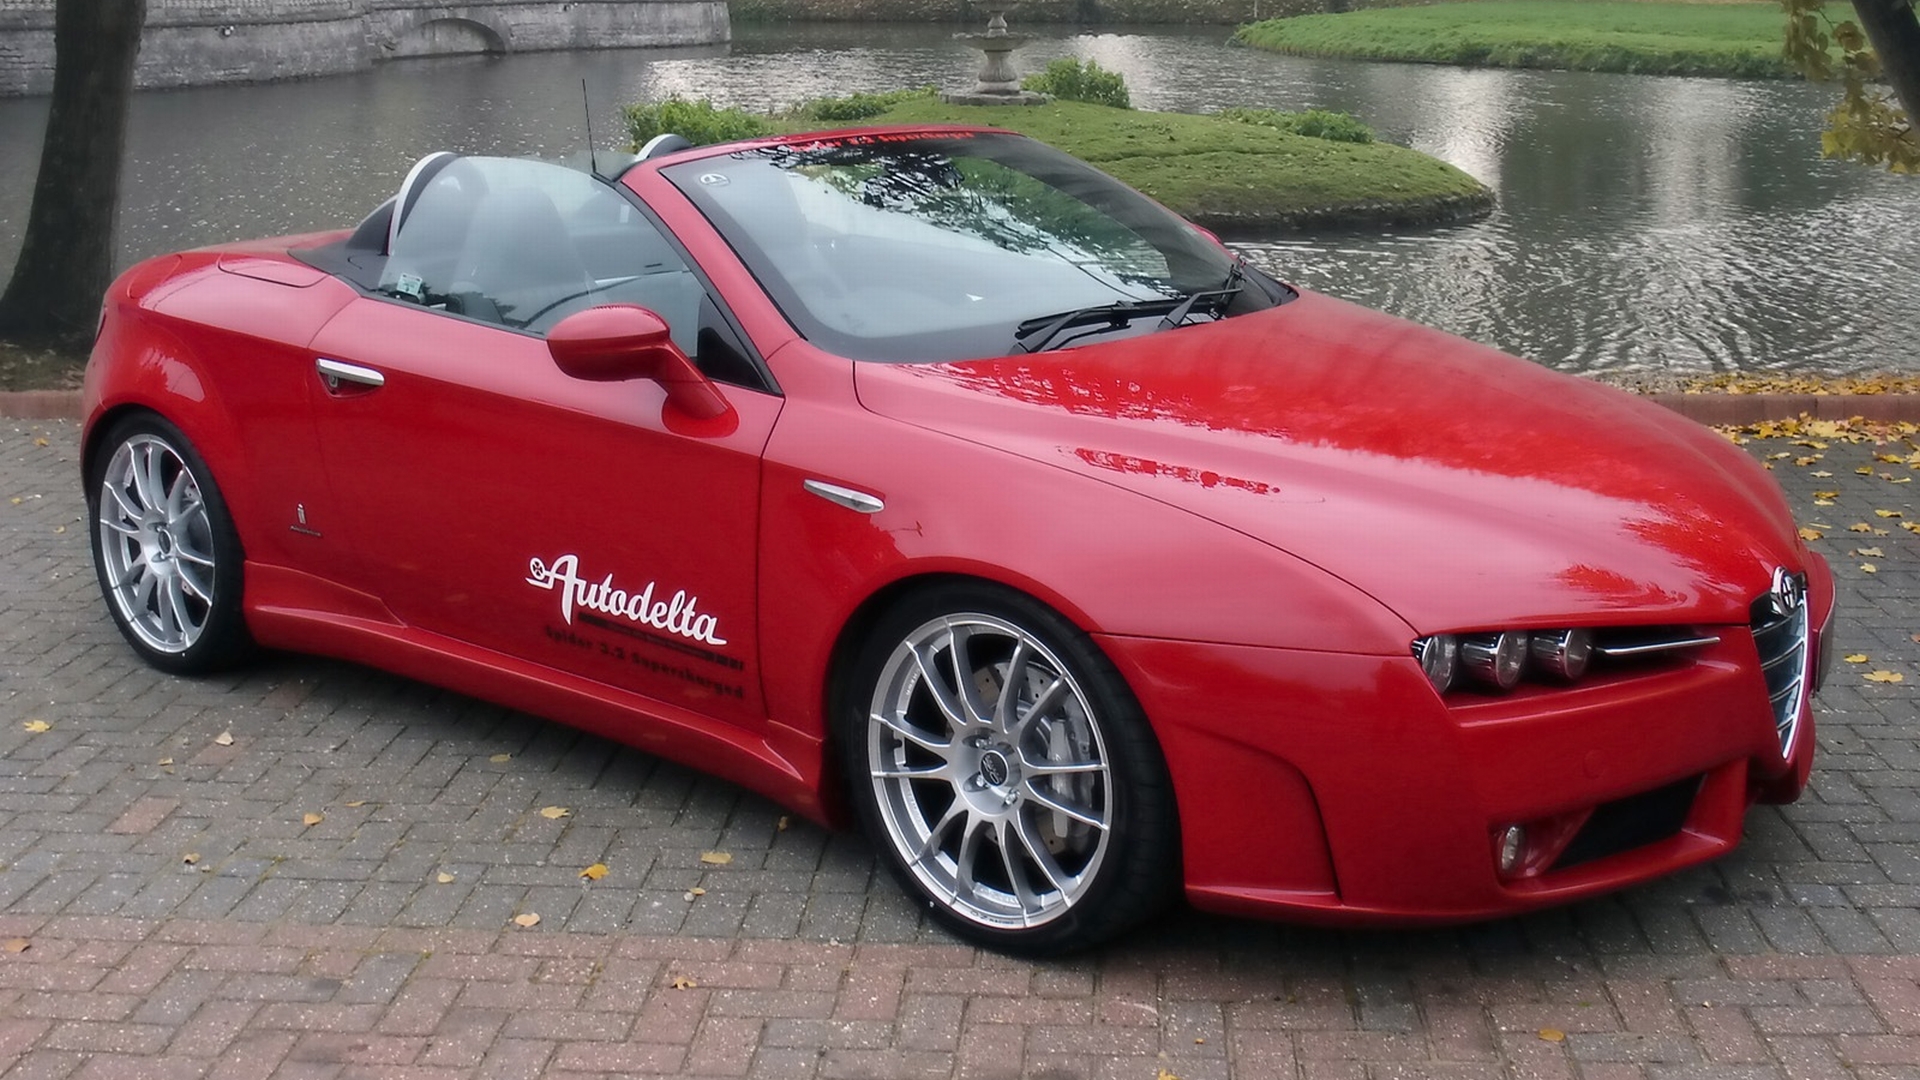 Télécharger des fonds d'écran Alfa Romeo Araignée HD